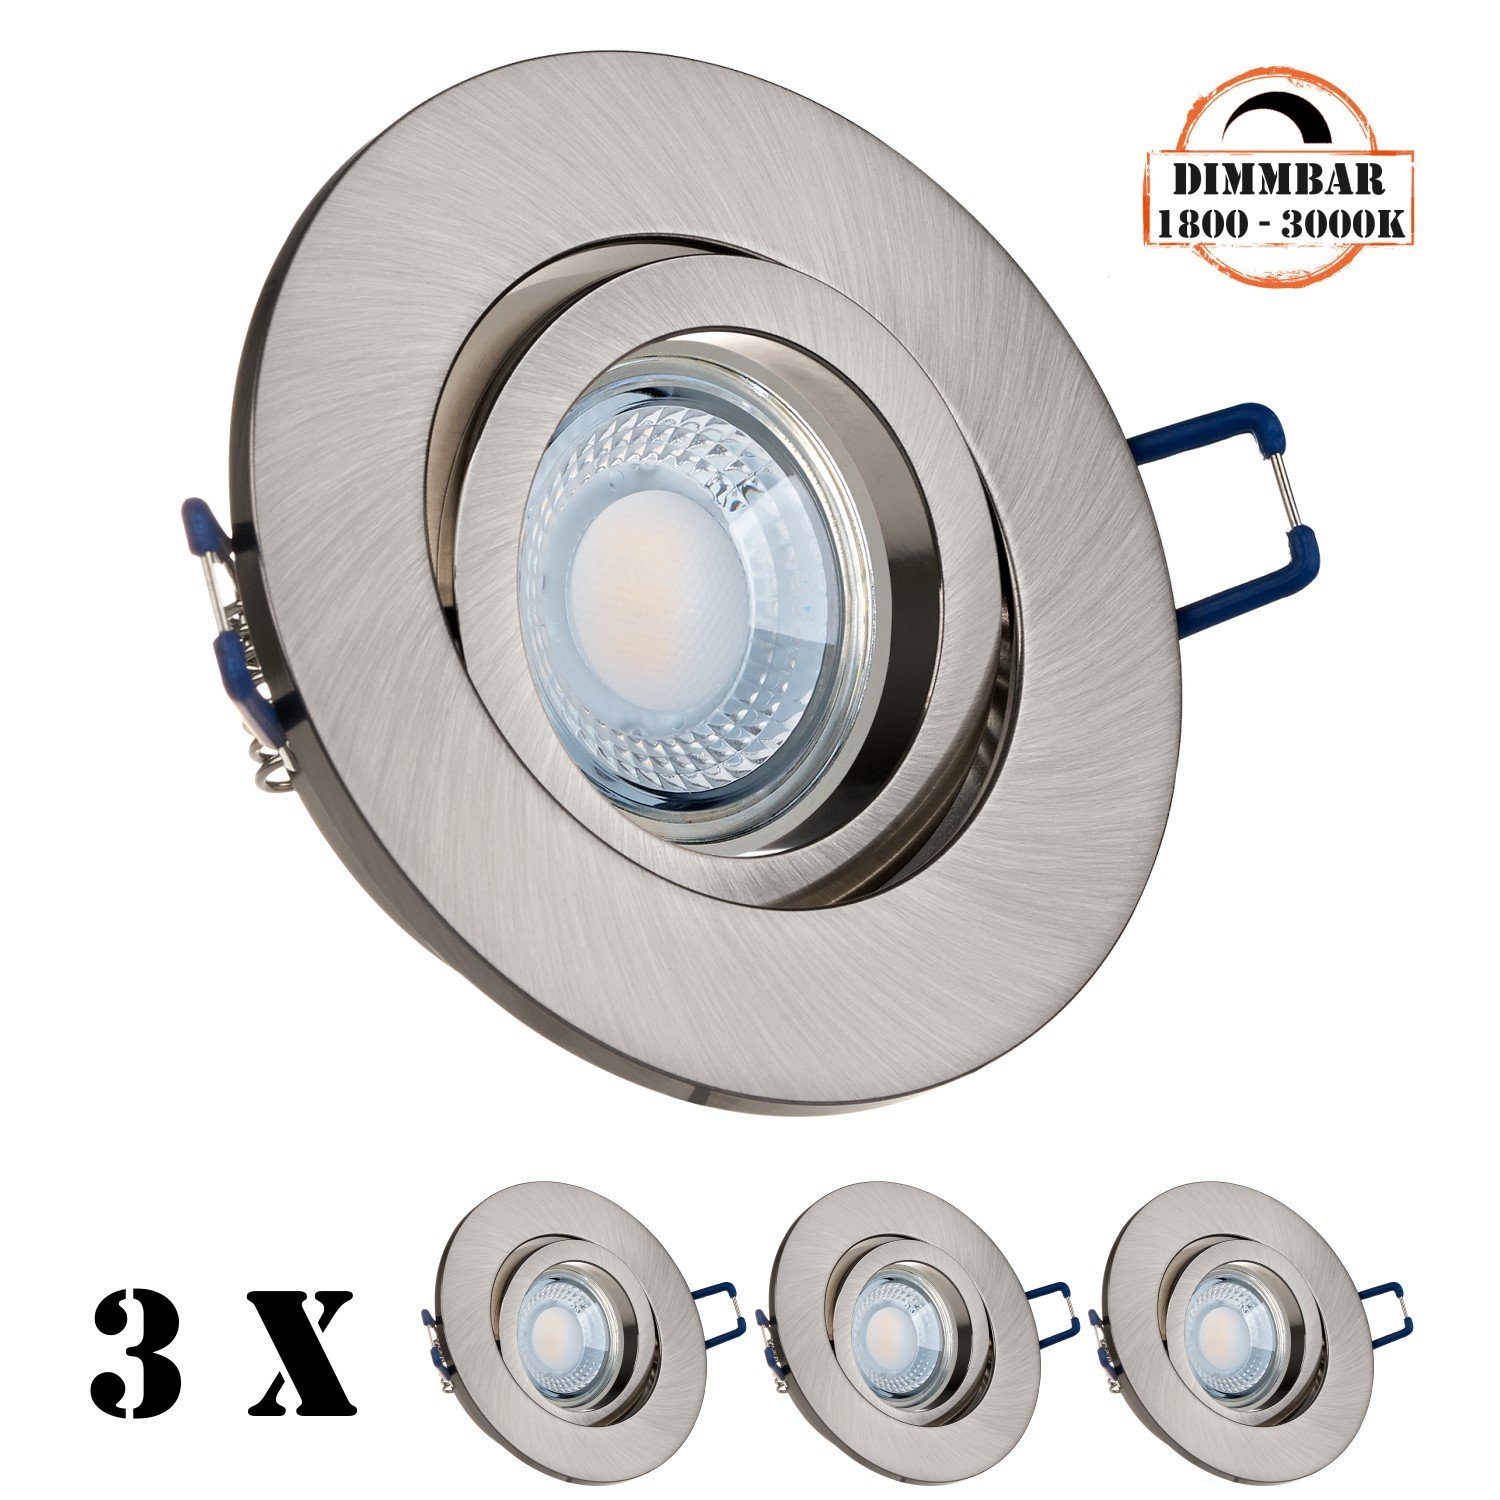 extra edelstahl flach / Einbaustrahler LED gebürstet Einbaustrahler LEDANDO in LED silber Set 3er